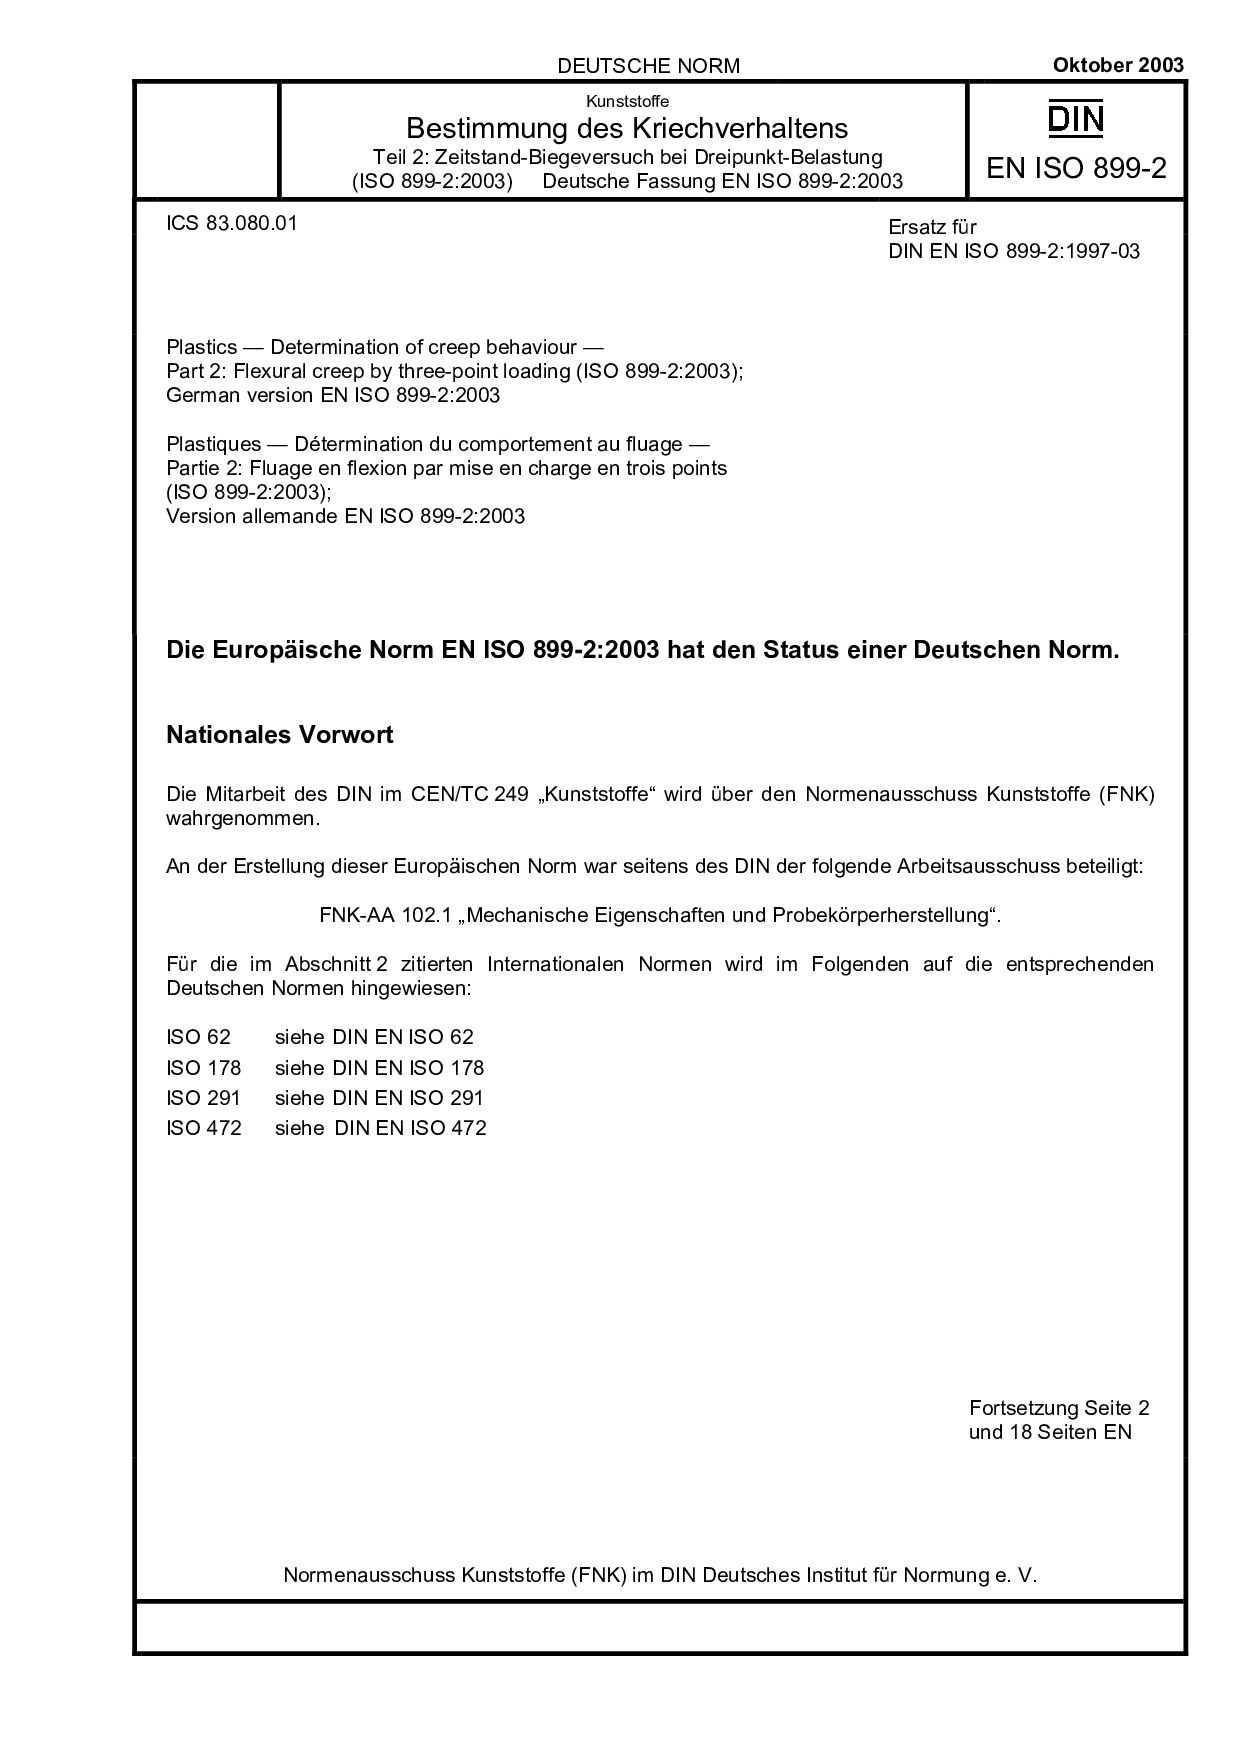 DIN EN ISO 899-2:2003